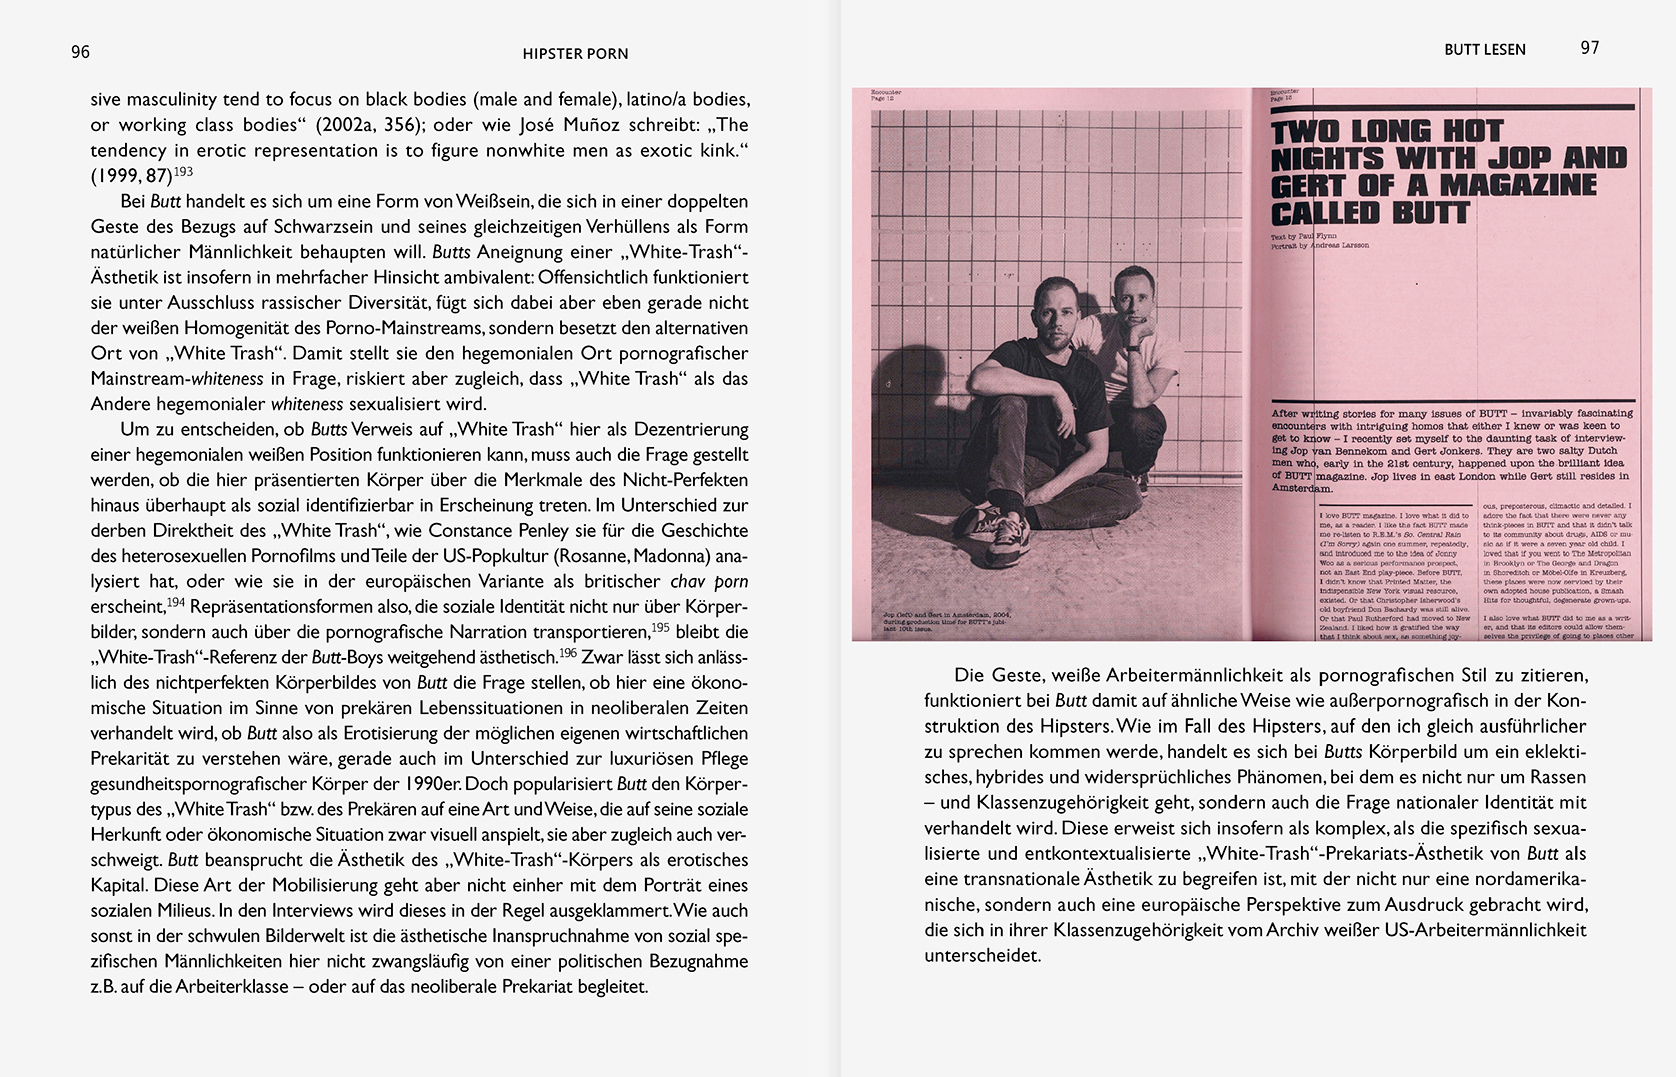 julia marquardt b_books berlin hipster porn peter rehberg bildbearbeitung buch photo editing book